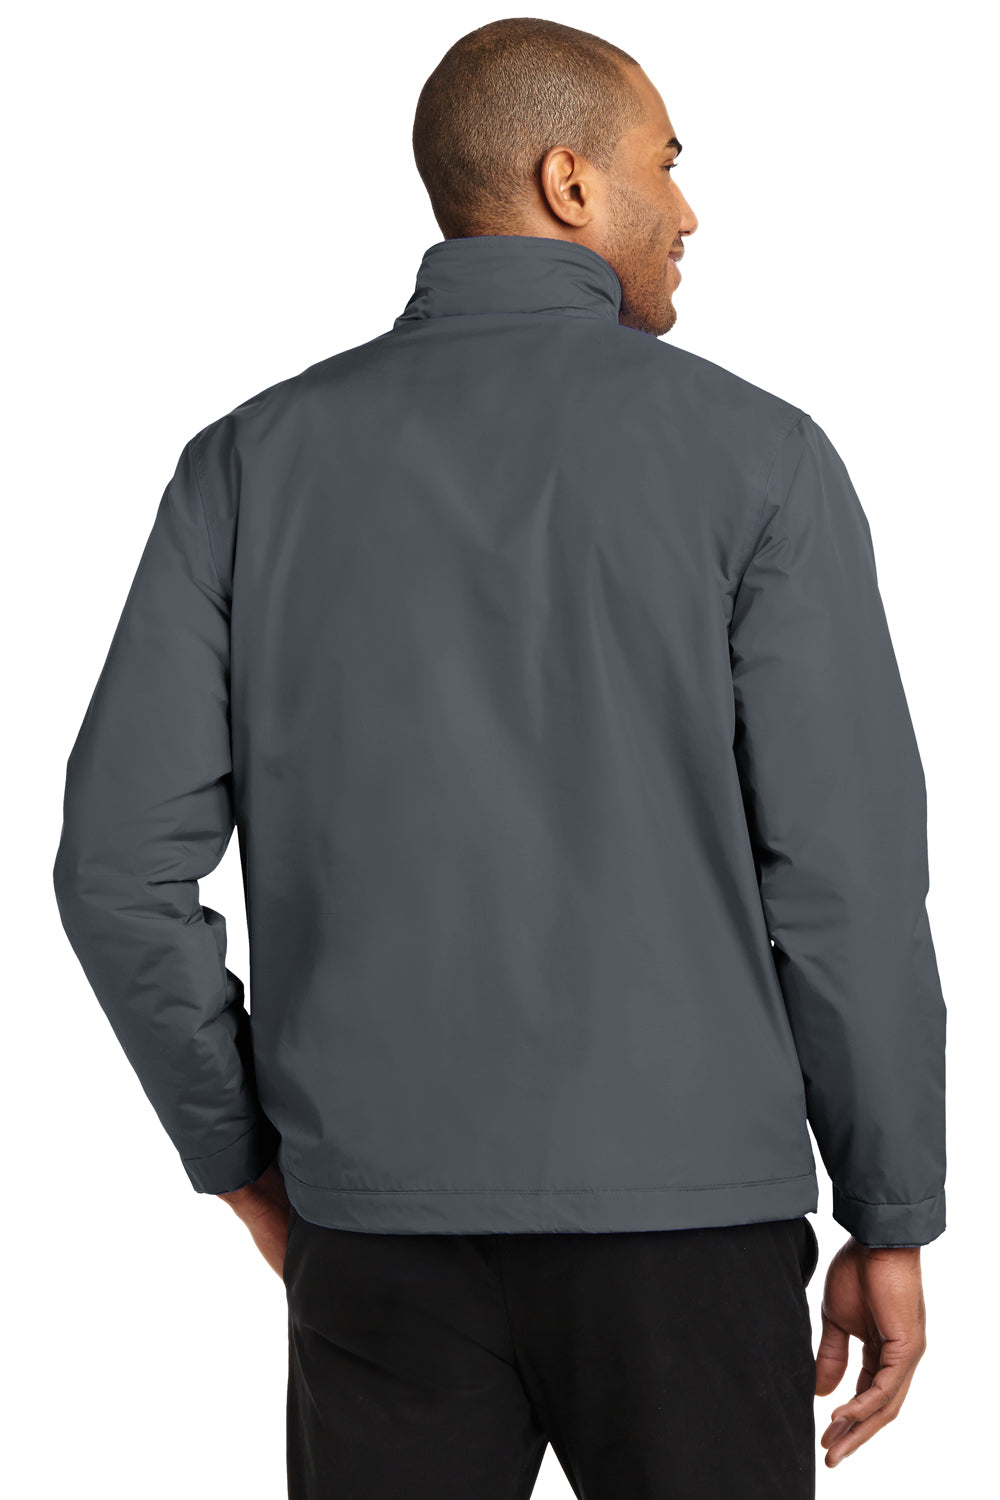 Port Authority J354 Mens Challenger II Wind & Water Resistant Full Zip Jacket Steel Grey Back